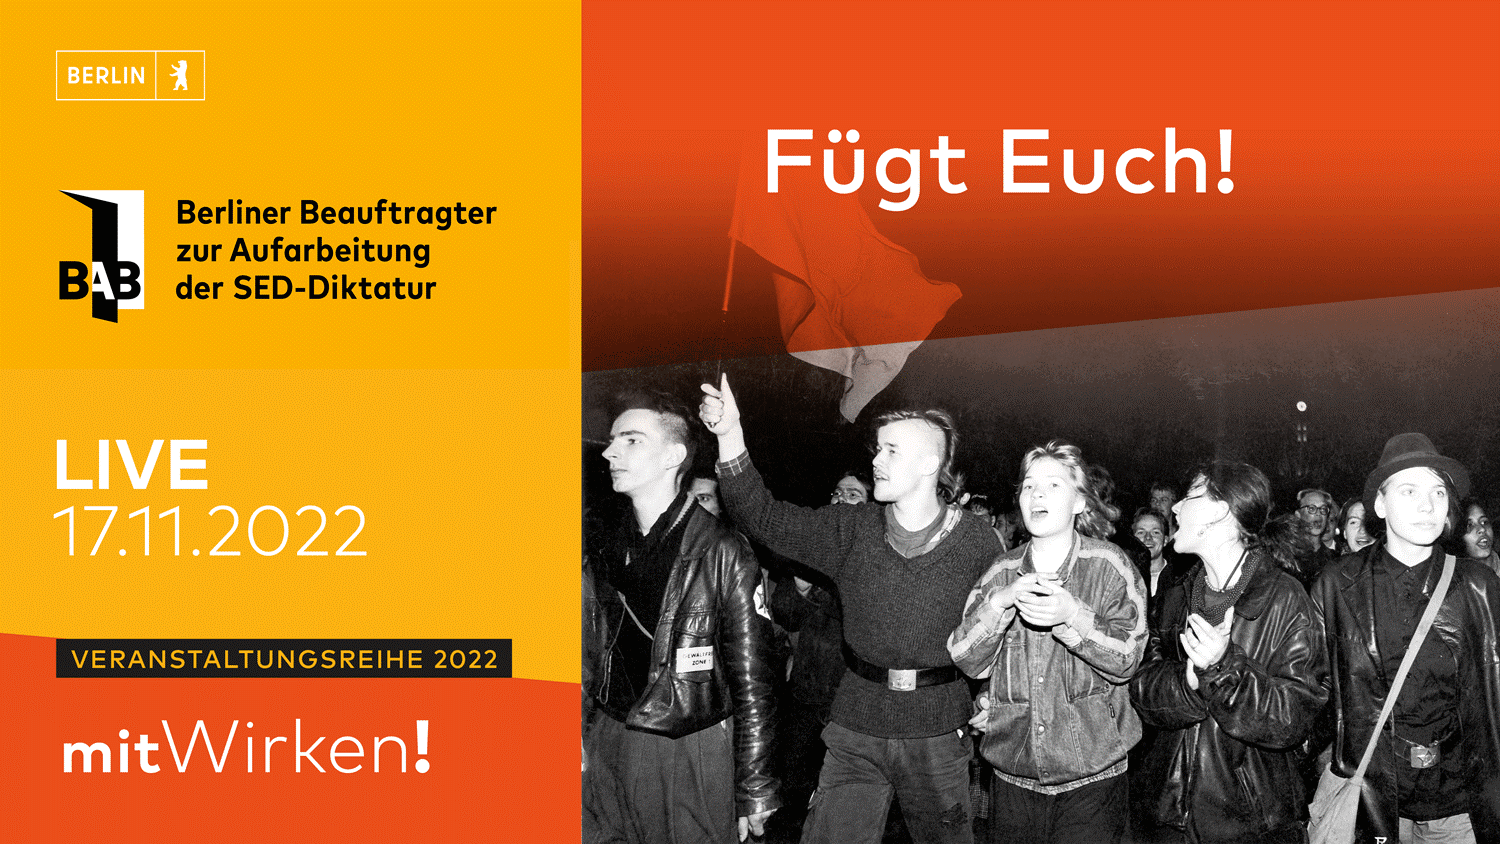 Einladungskarte zur Veranstaltung "Fügt Euch!" am 17.11.2022